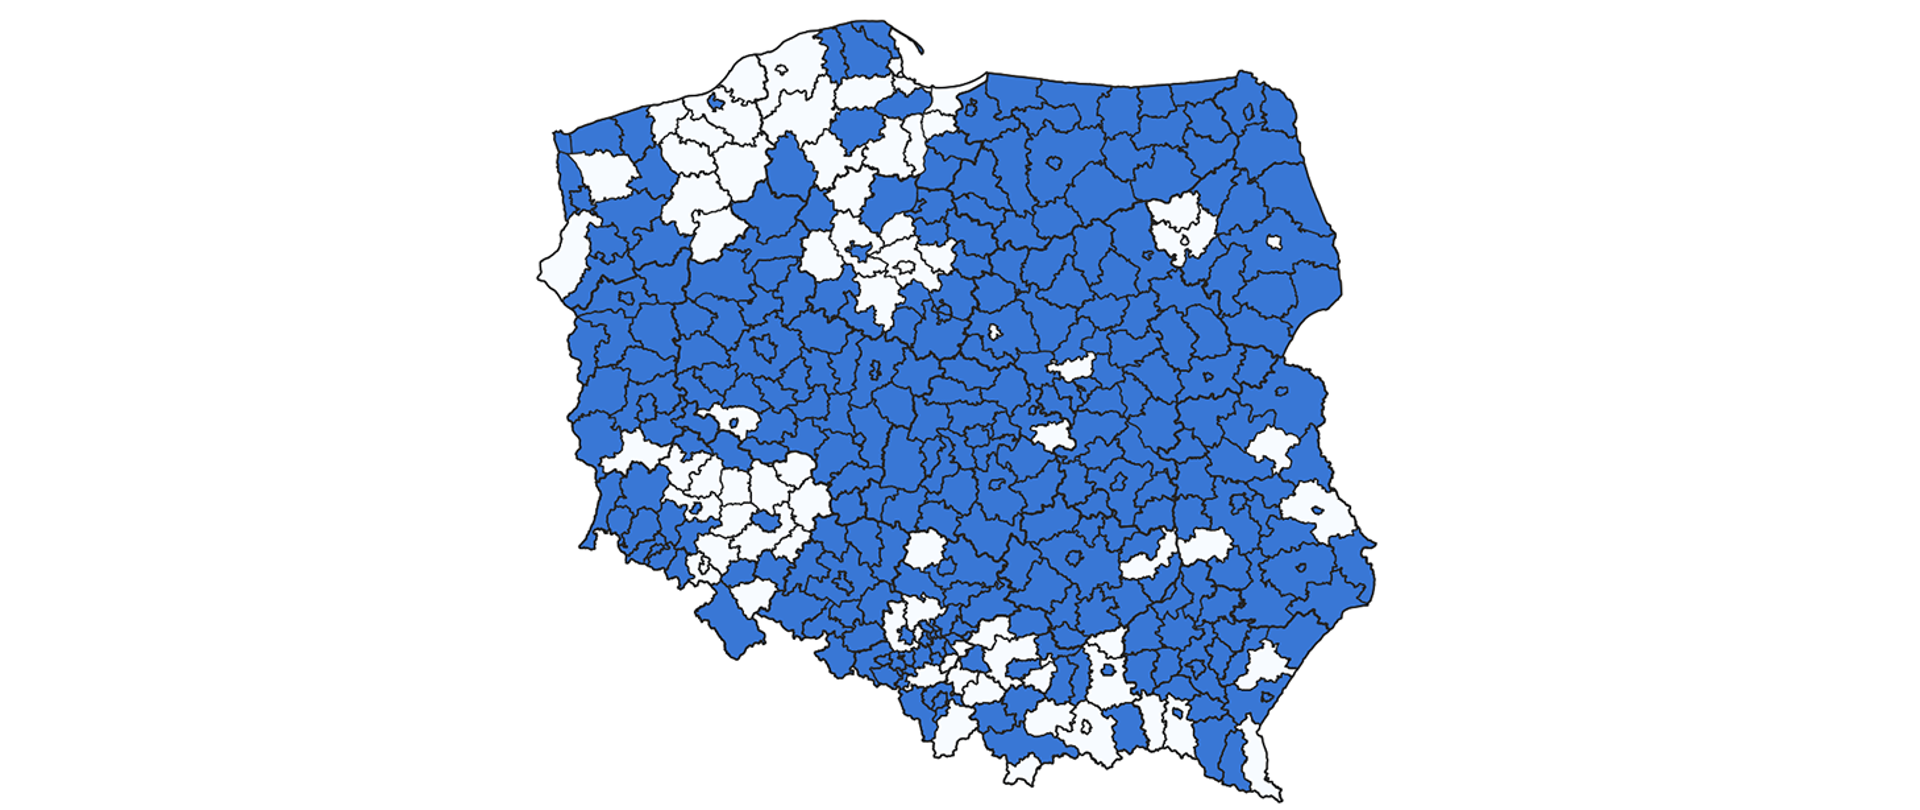 Na rysunku zaznaczono na mapie Polski powiaty, które nie uruchomiły jeszcze usługi WFS z ewidencji gruntów i budynków zgodnie z listą przedstawioną na rys 2.